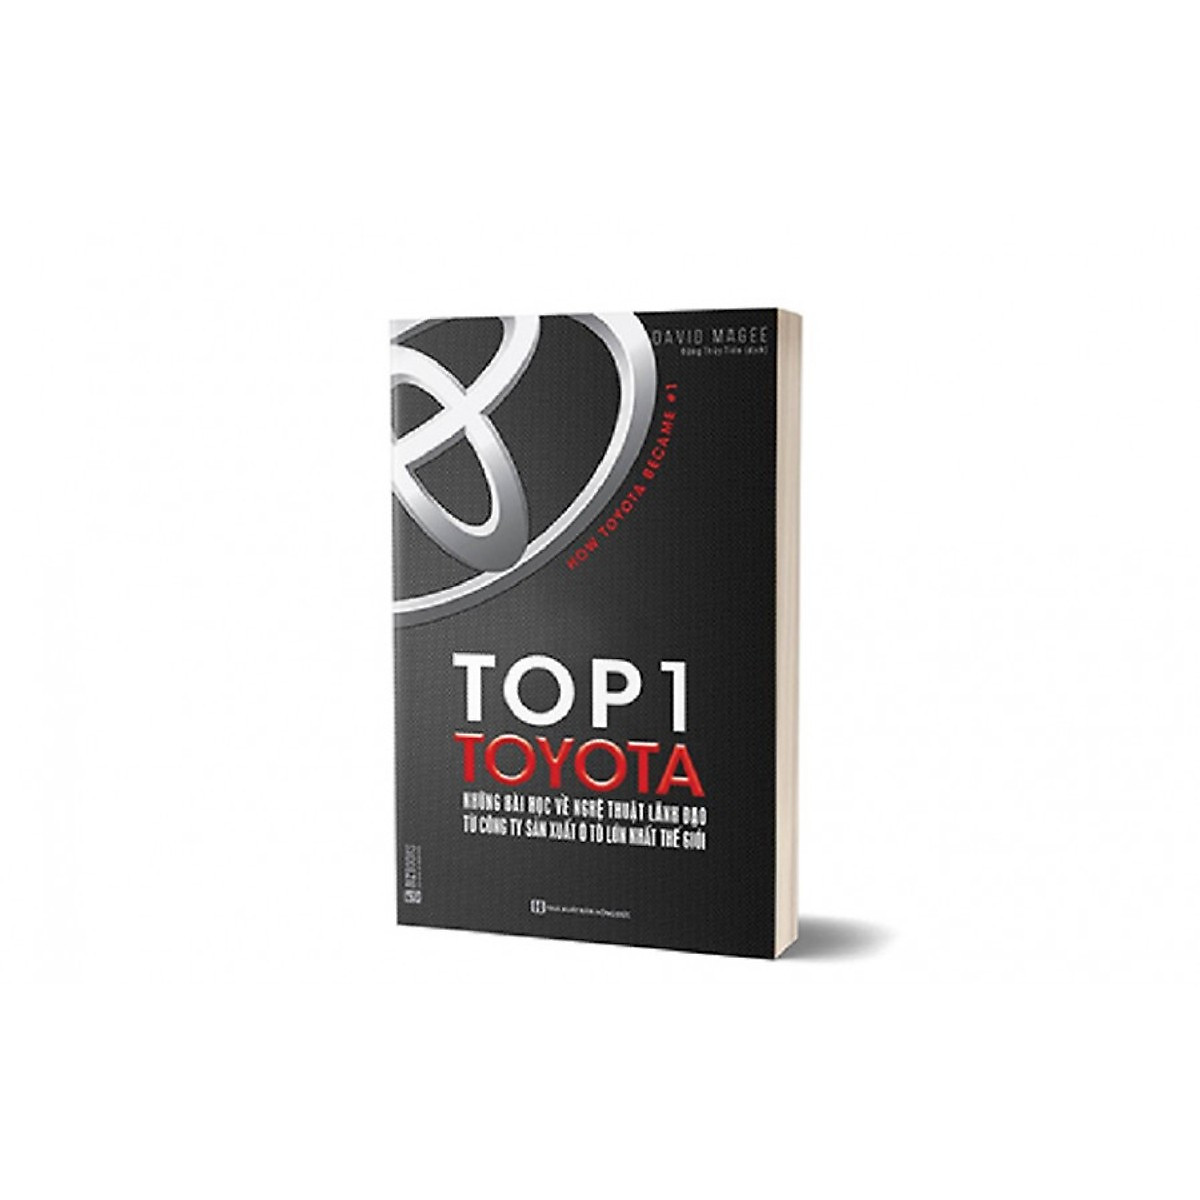 Top 1 Toyota - Những Bài Học Về Nghệ Thuật Lãnh Đạo (Tặng Bookmark độc đáo)